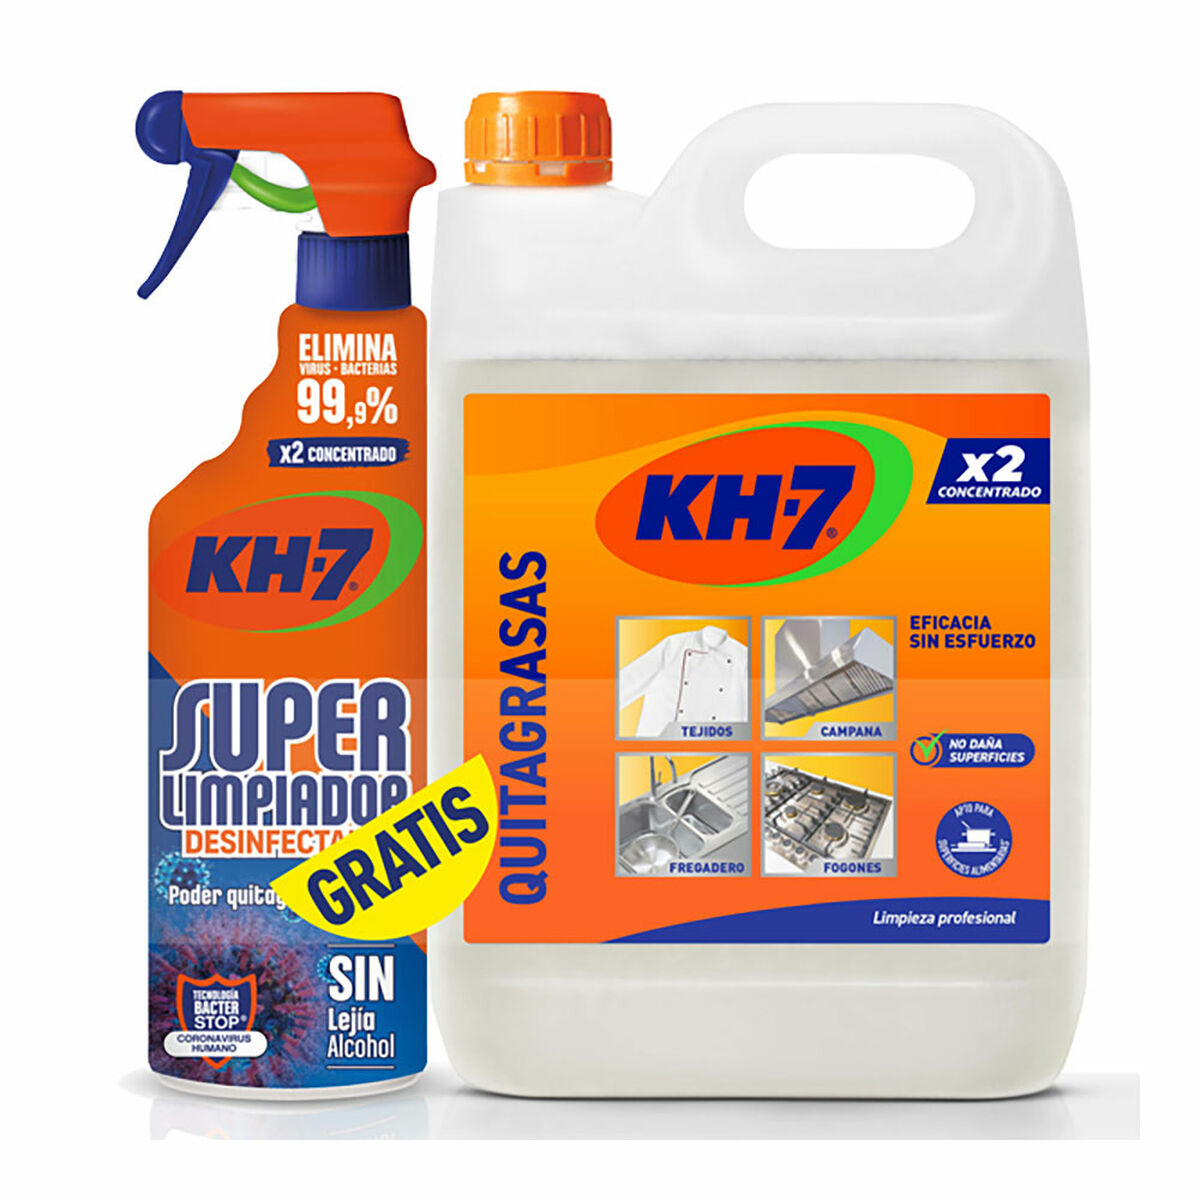 Kh-7 - Quitagrasas - Producto de limpieza - 750 ml - [Pack de 12]